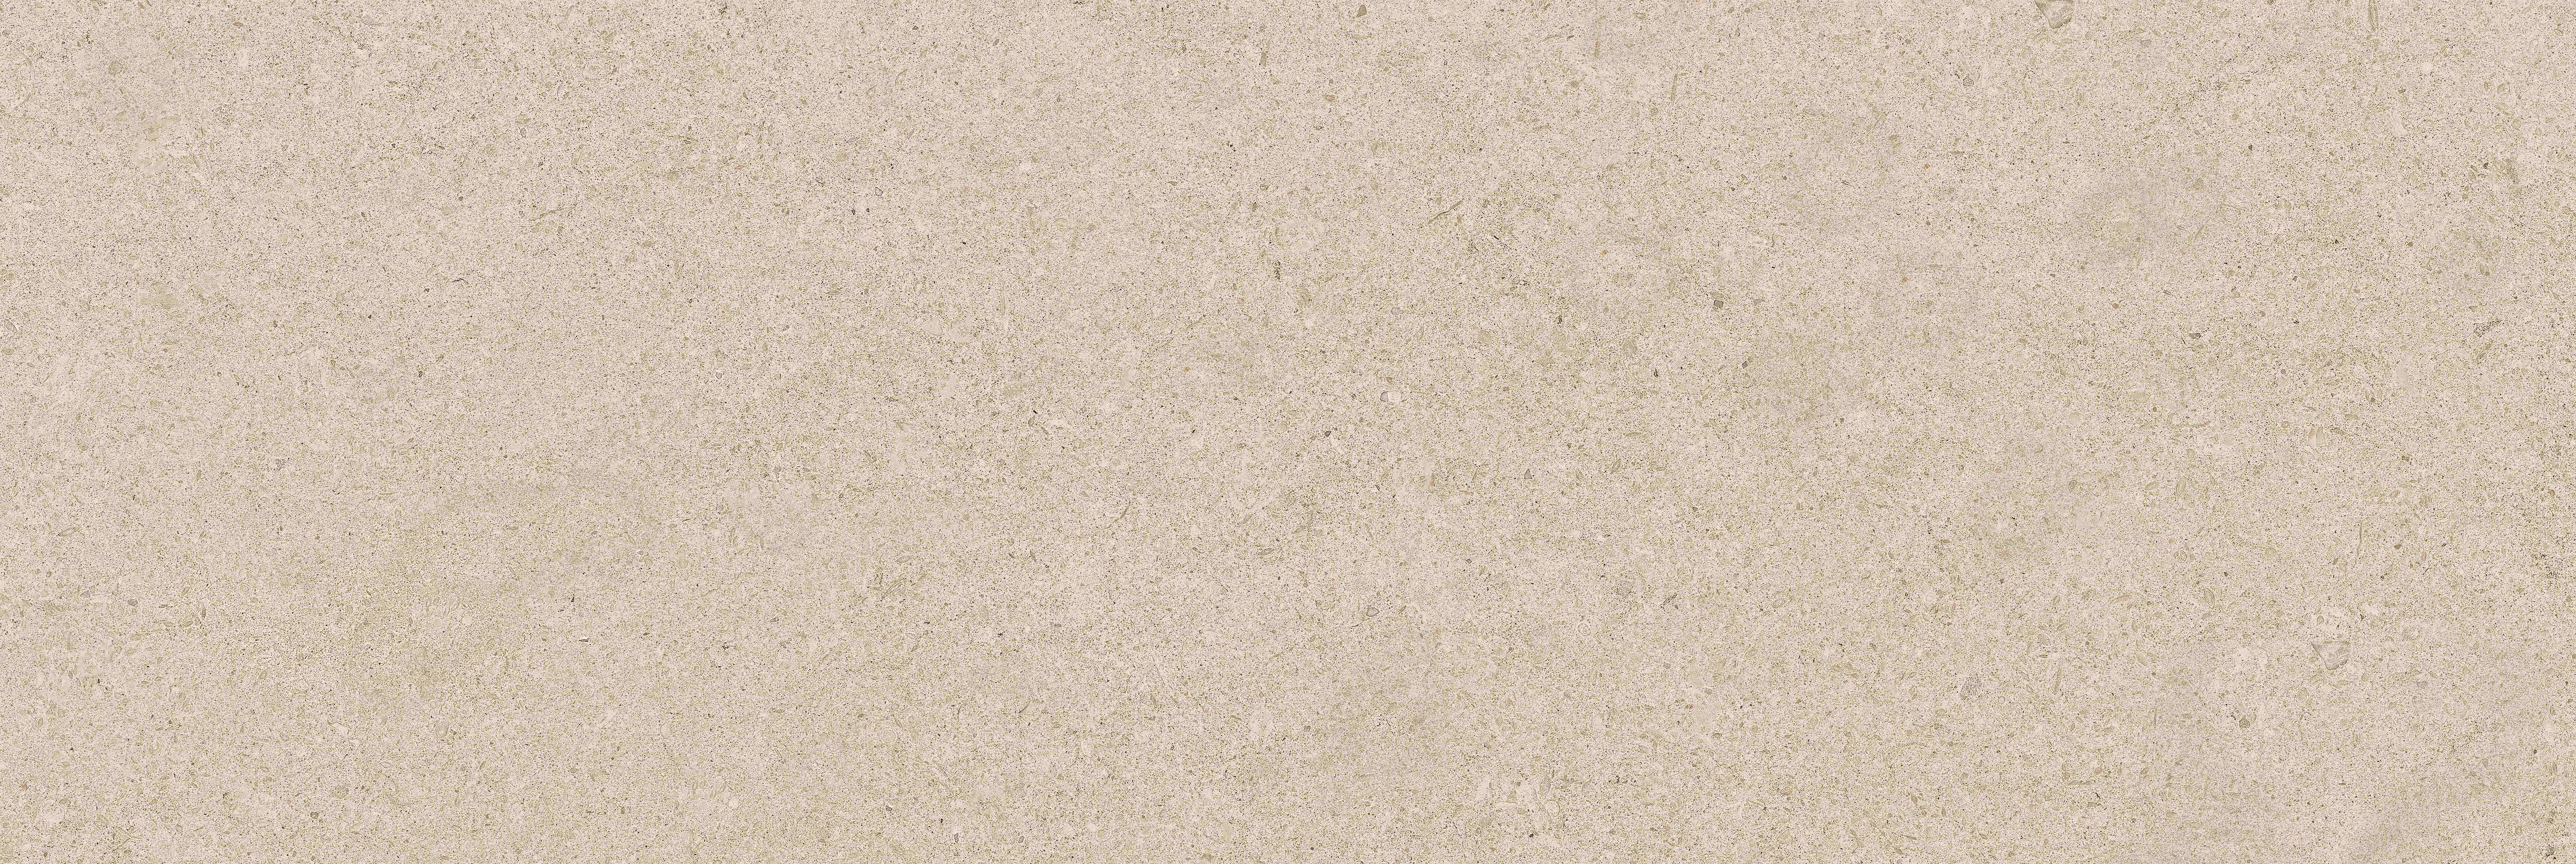 90280585 Керамическая плитка Salutami granite 20х60см, цена за упаковку STLM-0166131 CRETO